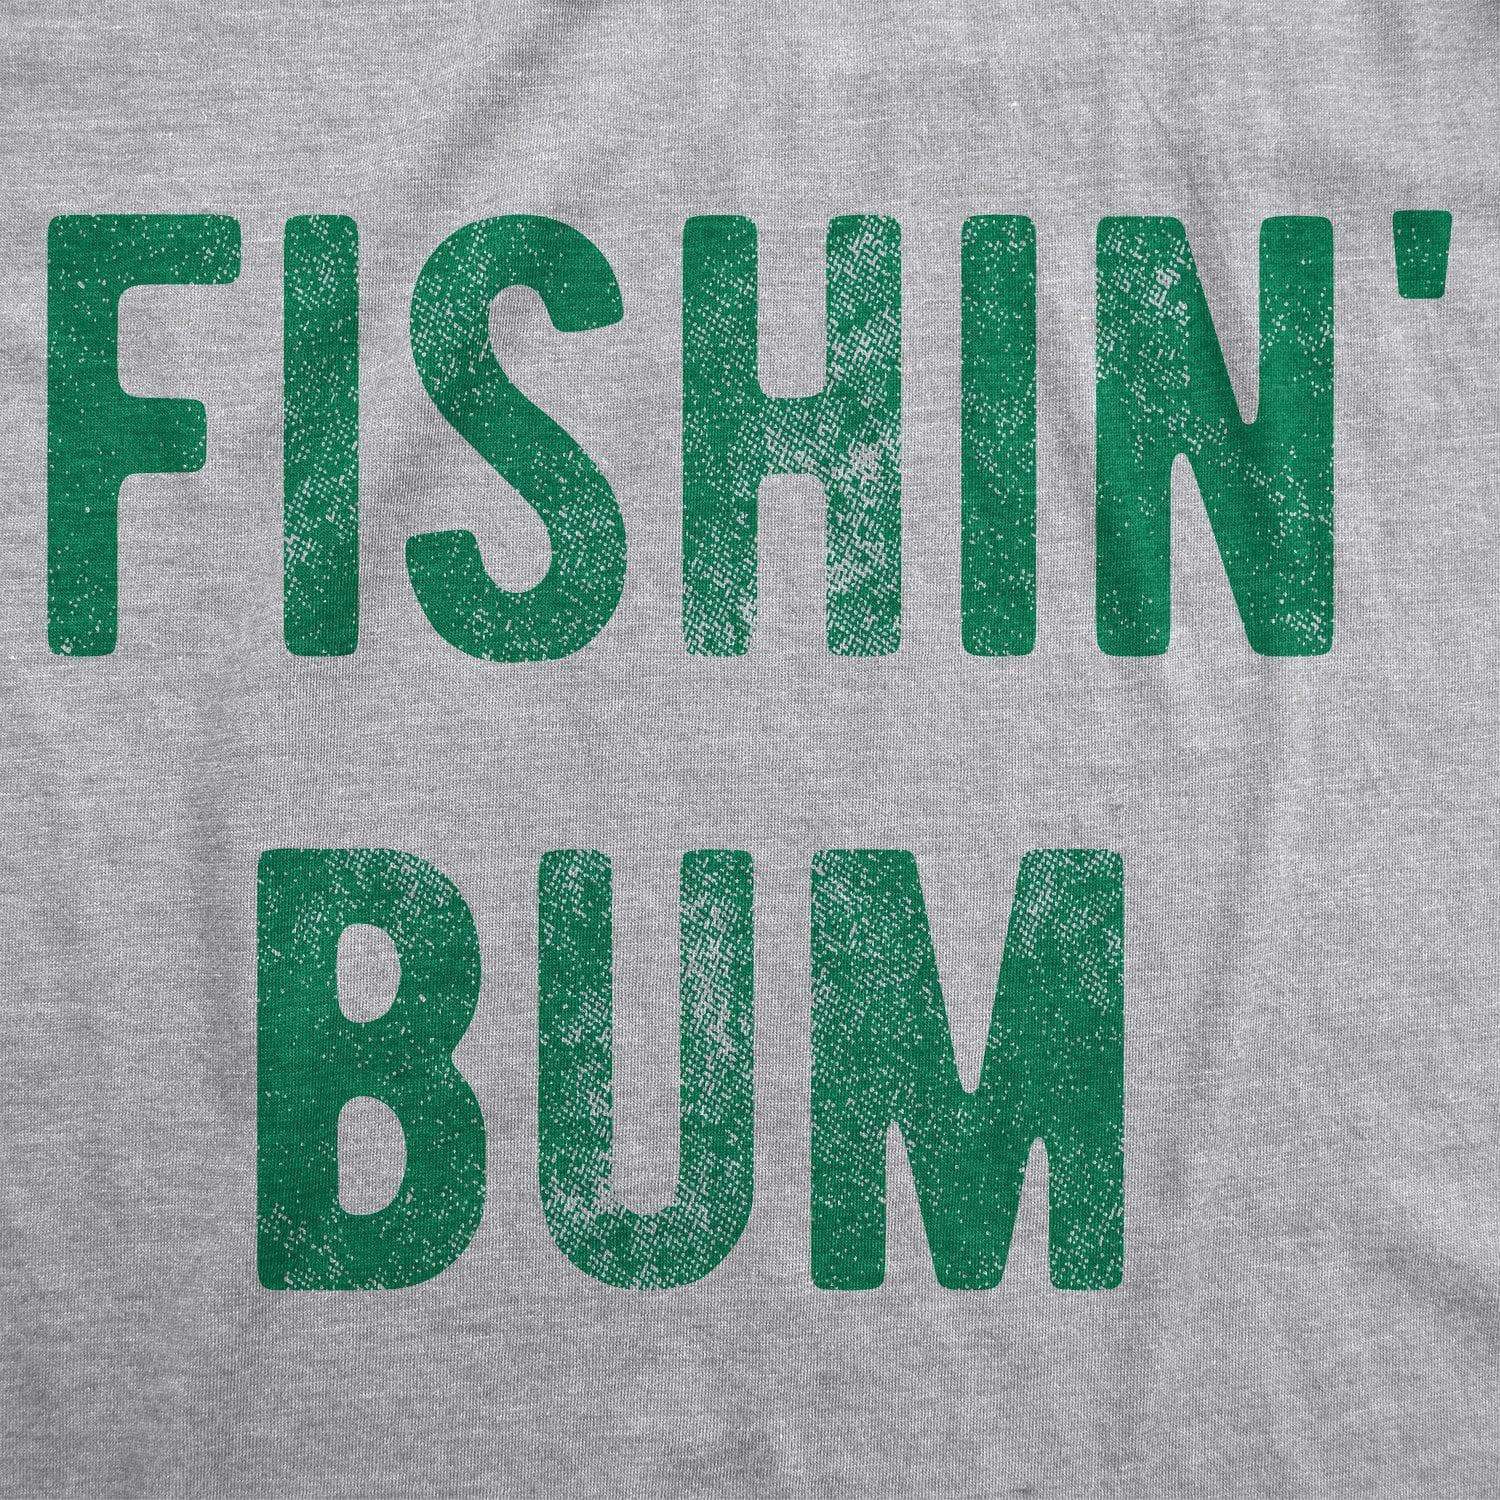 Fishin' Bum Men's Tshirt  -  Crazy Dog T-Shirts